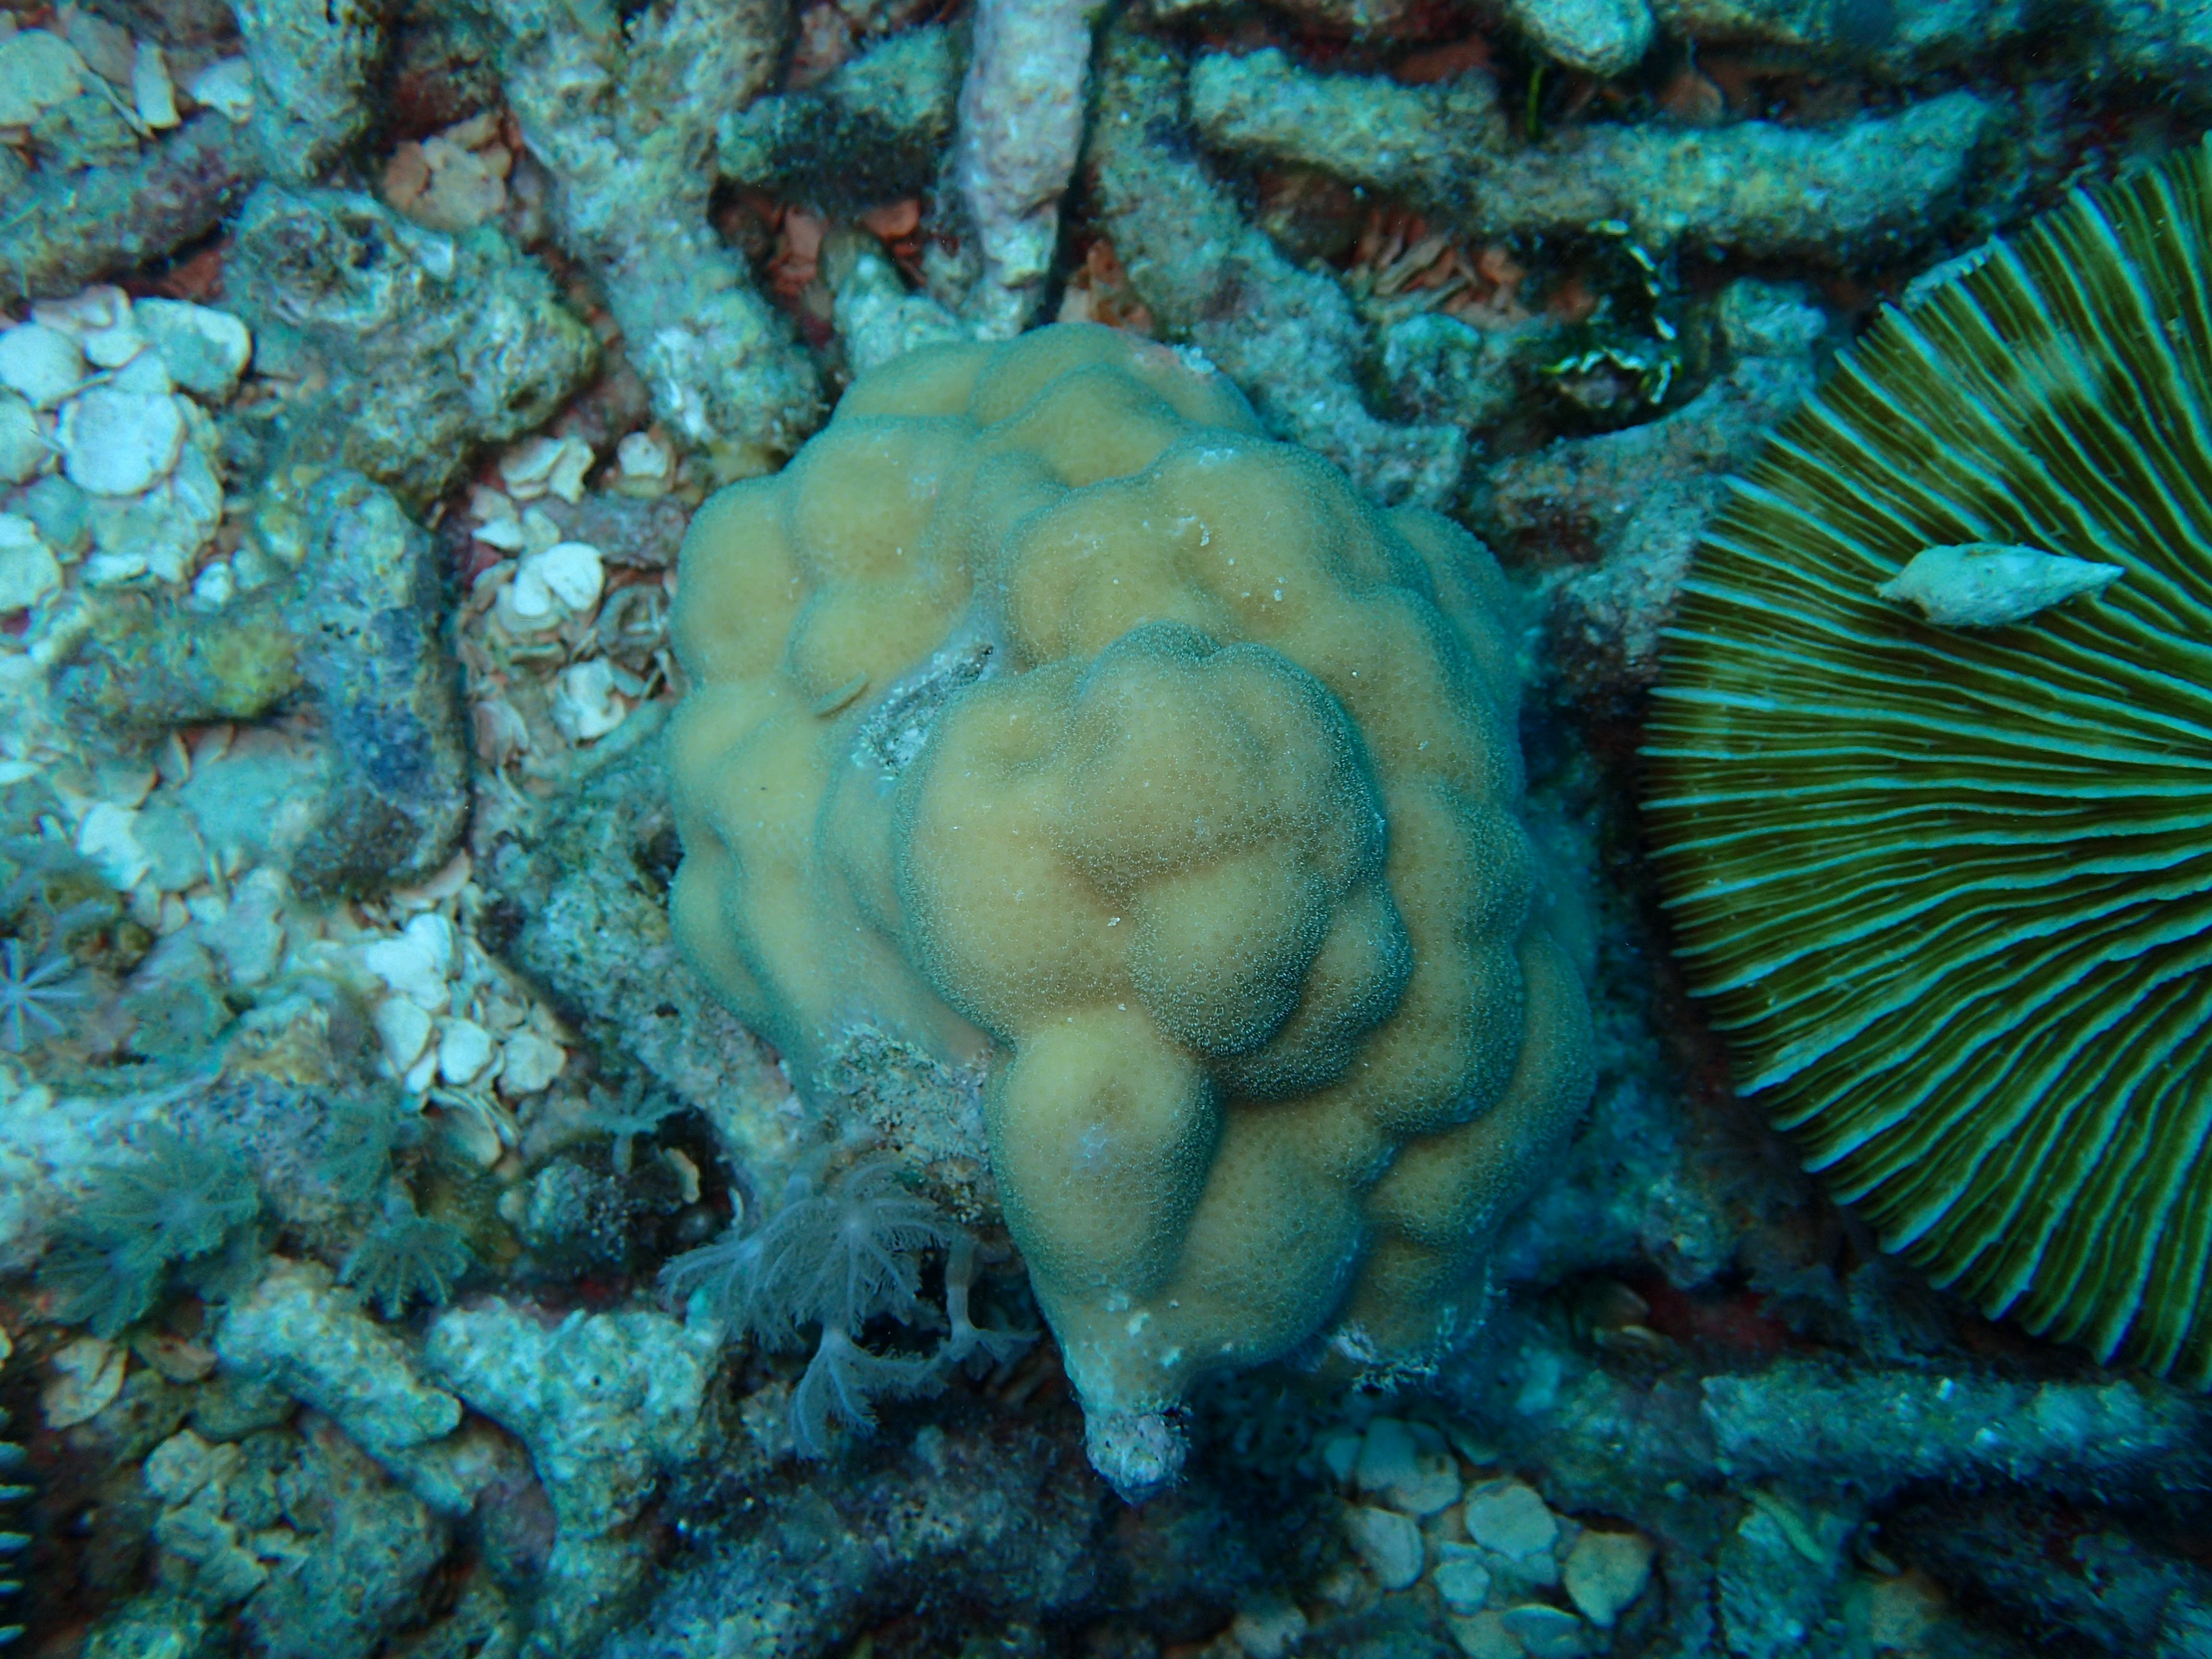 Porites coral at Bawah Reserve Indonesia